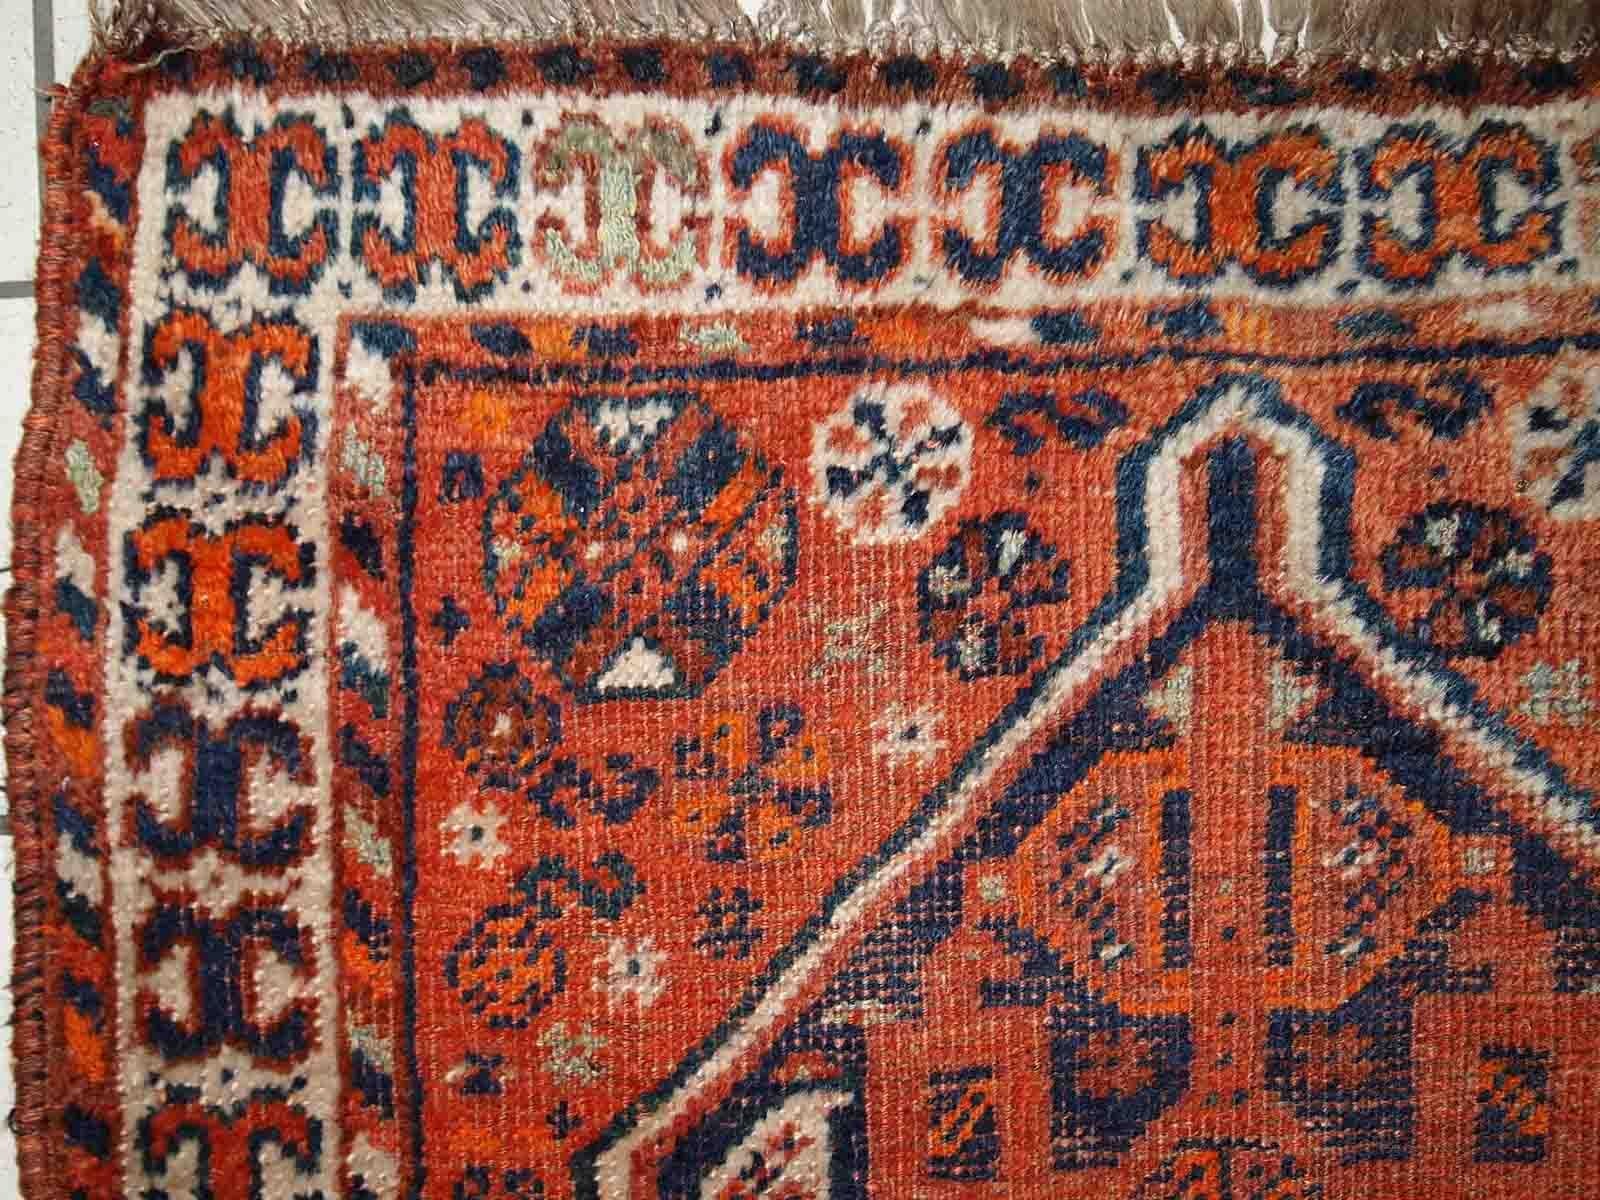 Handgefertigter antiker Teppich aus dem Nahen Osten in traditionellem Design. Der Teppich stammt aus dem Anfang des 20. Jahrhunderts und ist in schlechtem Zustand. 

-Zustand: notleidend,

-CIRCA: 1900er Jahre,

-Größe: 2,8' x 3,7' (87cm x